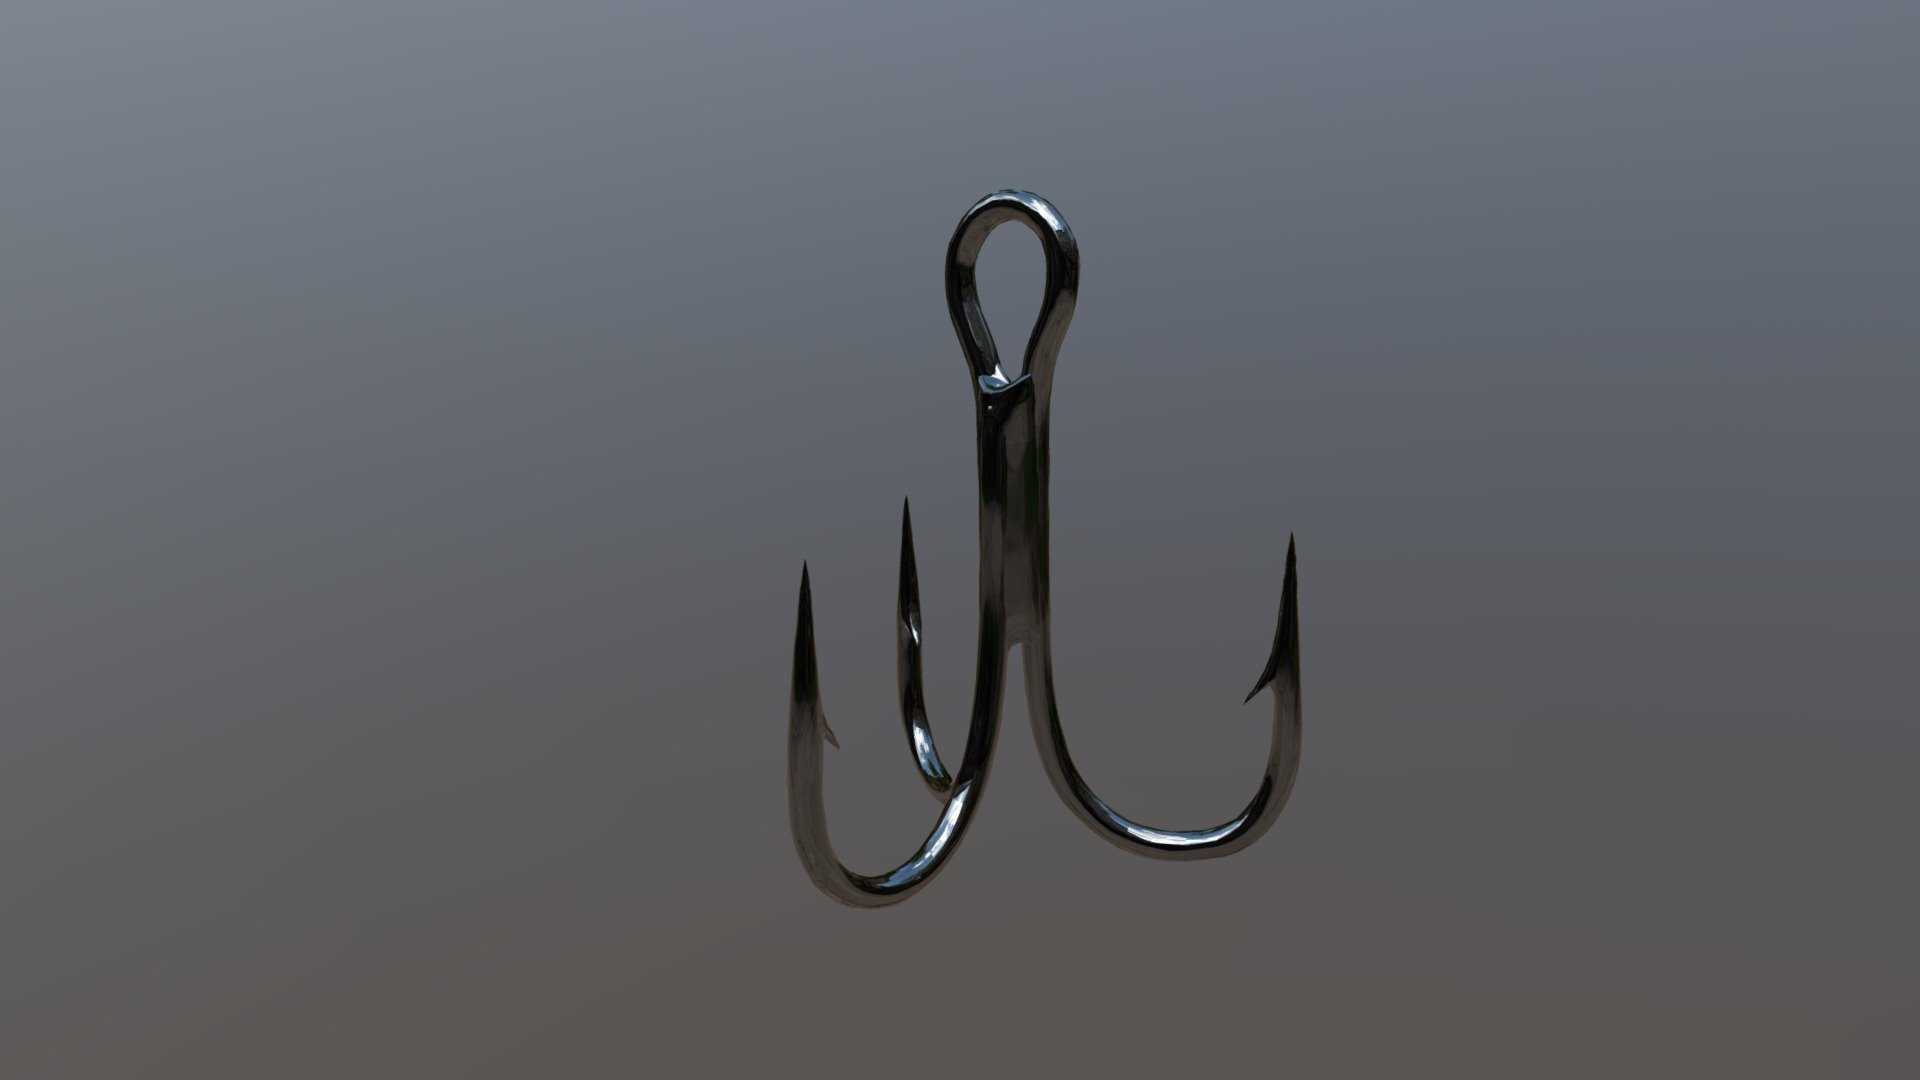 Triple Needle Hook Fishing Material - Triple Hook Fishing Material - 3D model by isa sahinturk (@limitlessisa) 3d model